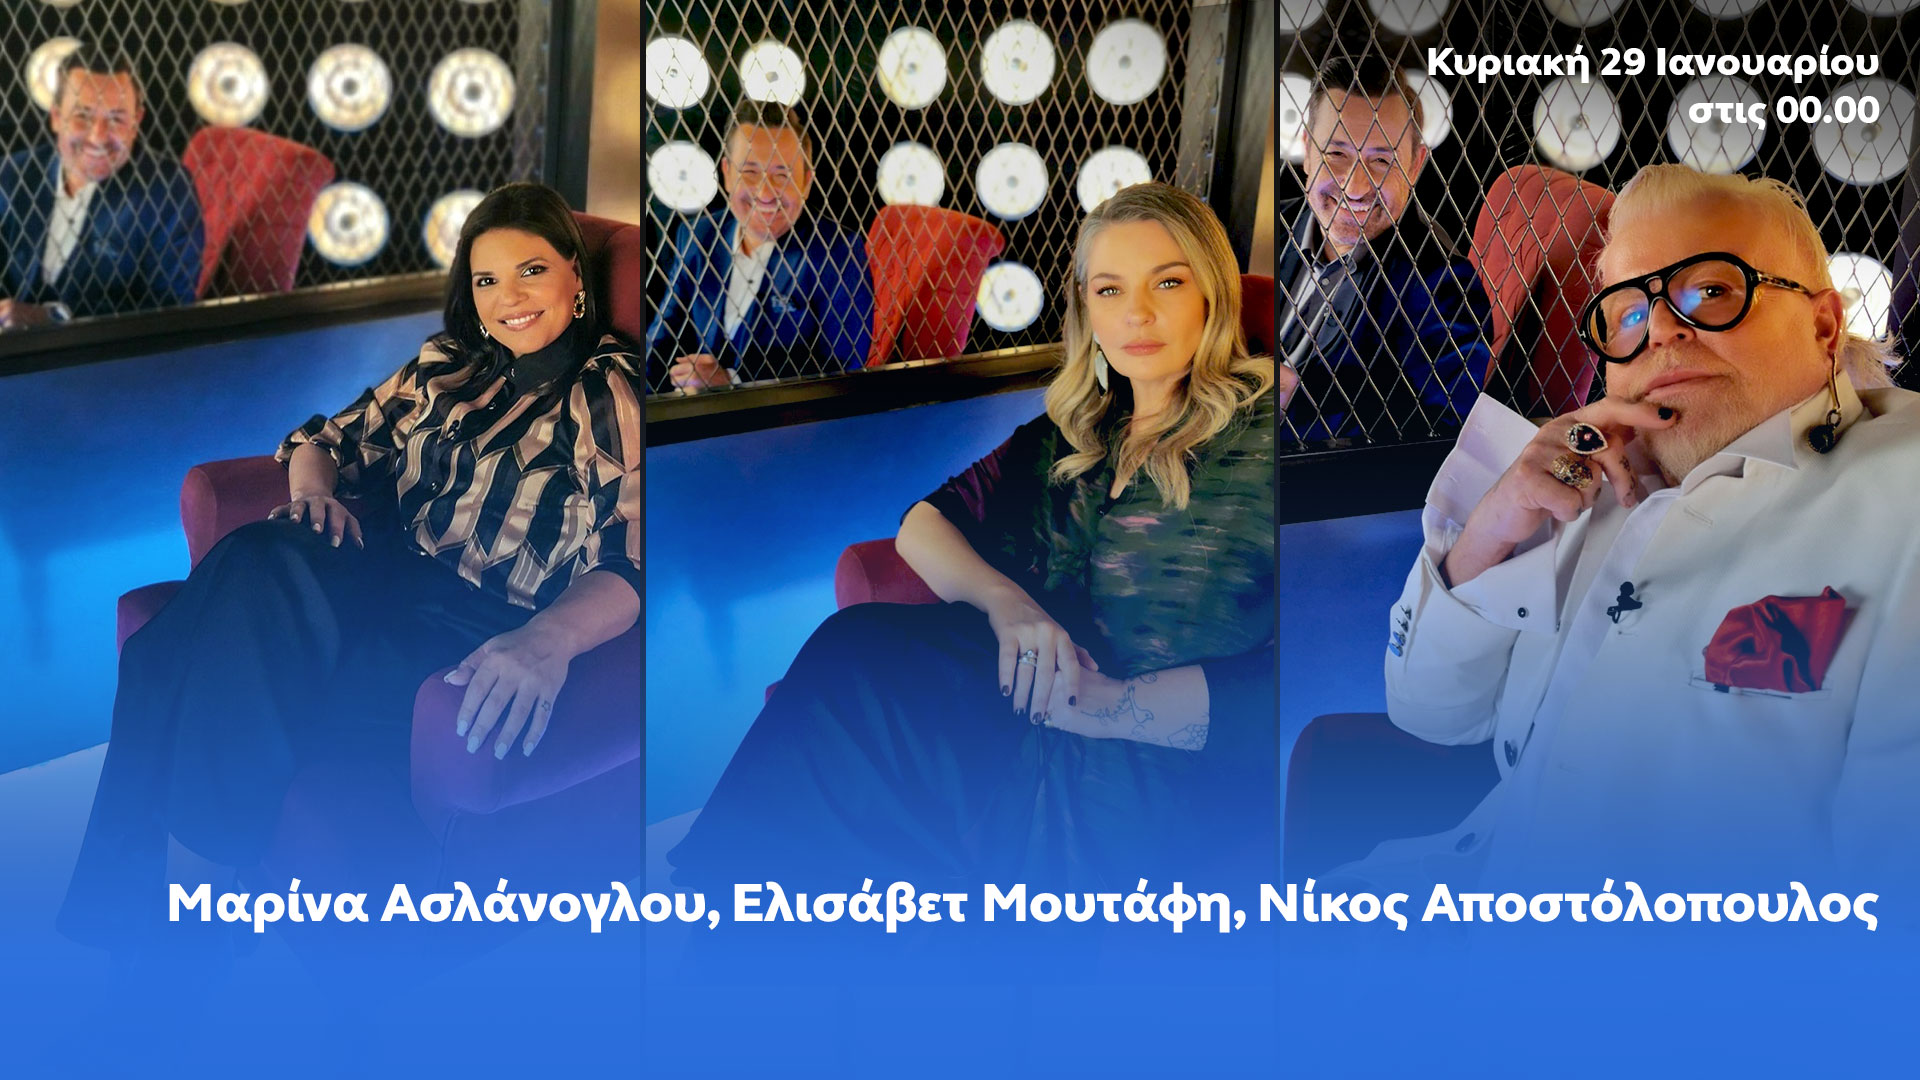 Δελτίο τύπου - After Dark - Μαρίνα Ασλάνογλου, Ελισάβετ Μουτάφη και Νίκος Αποστόλοπουλος